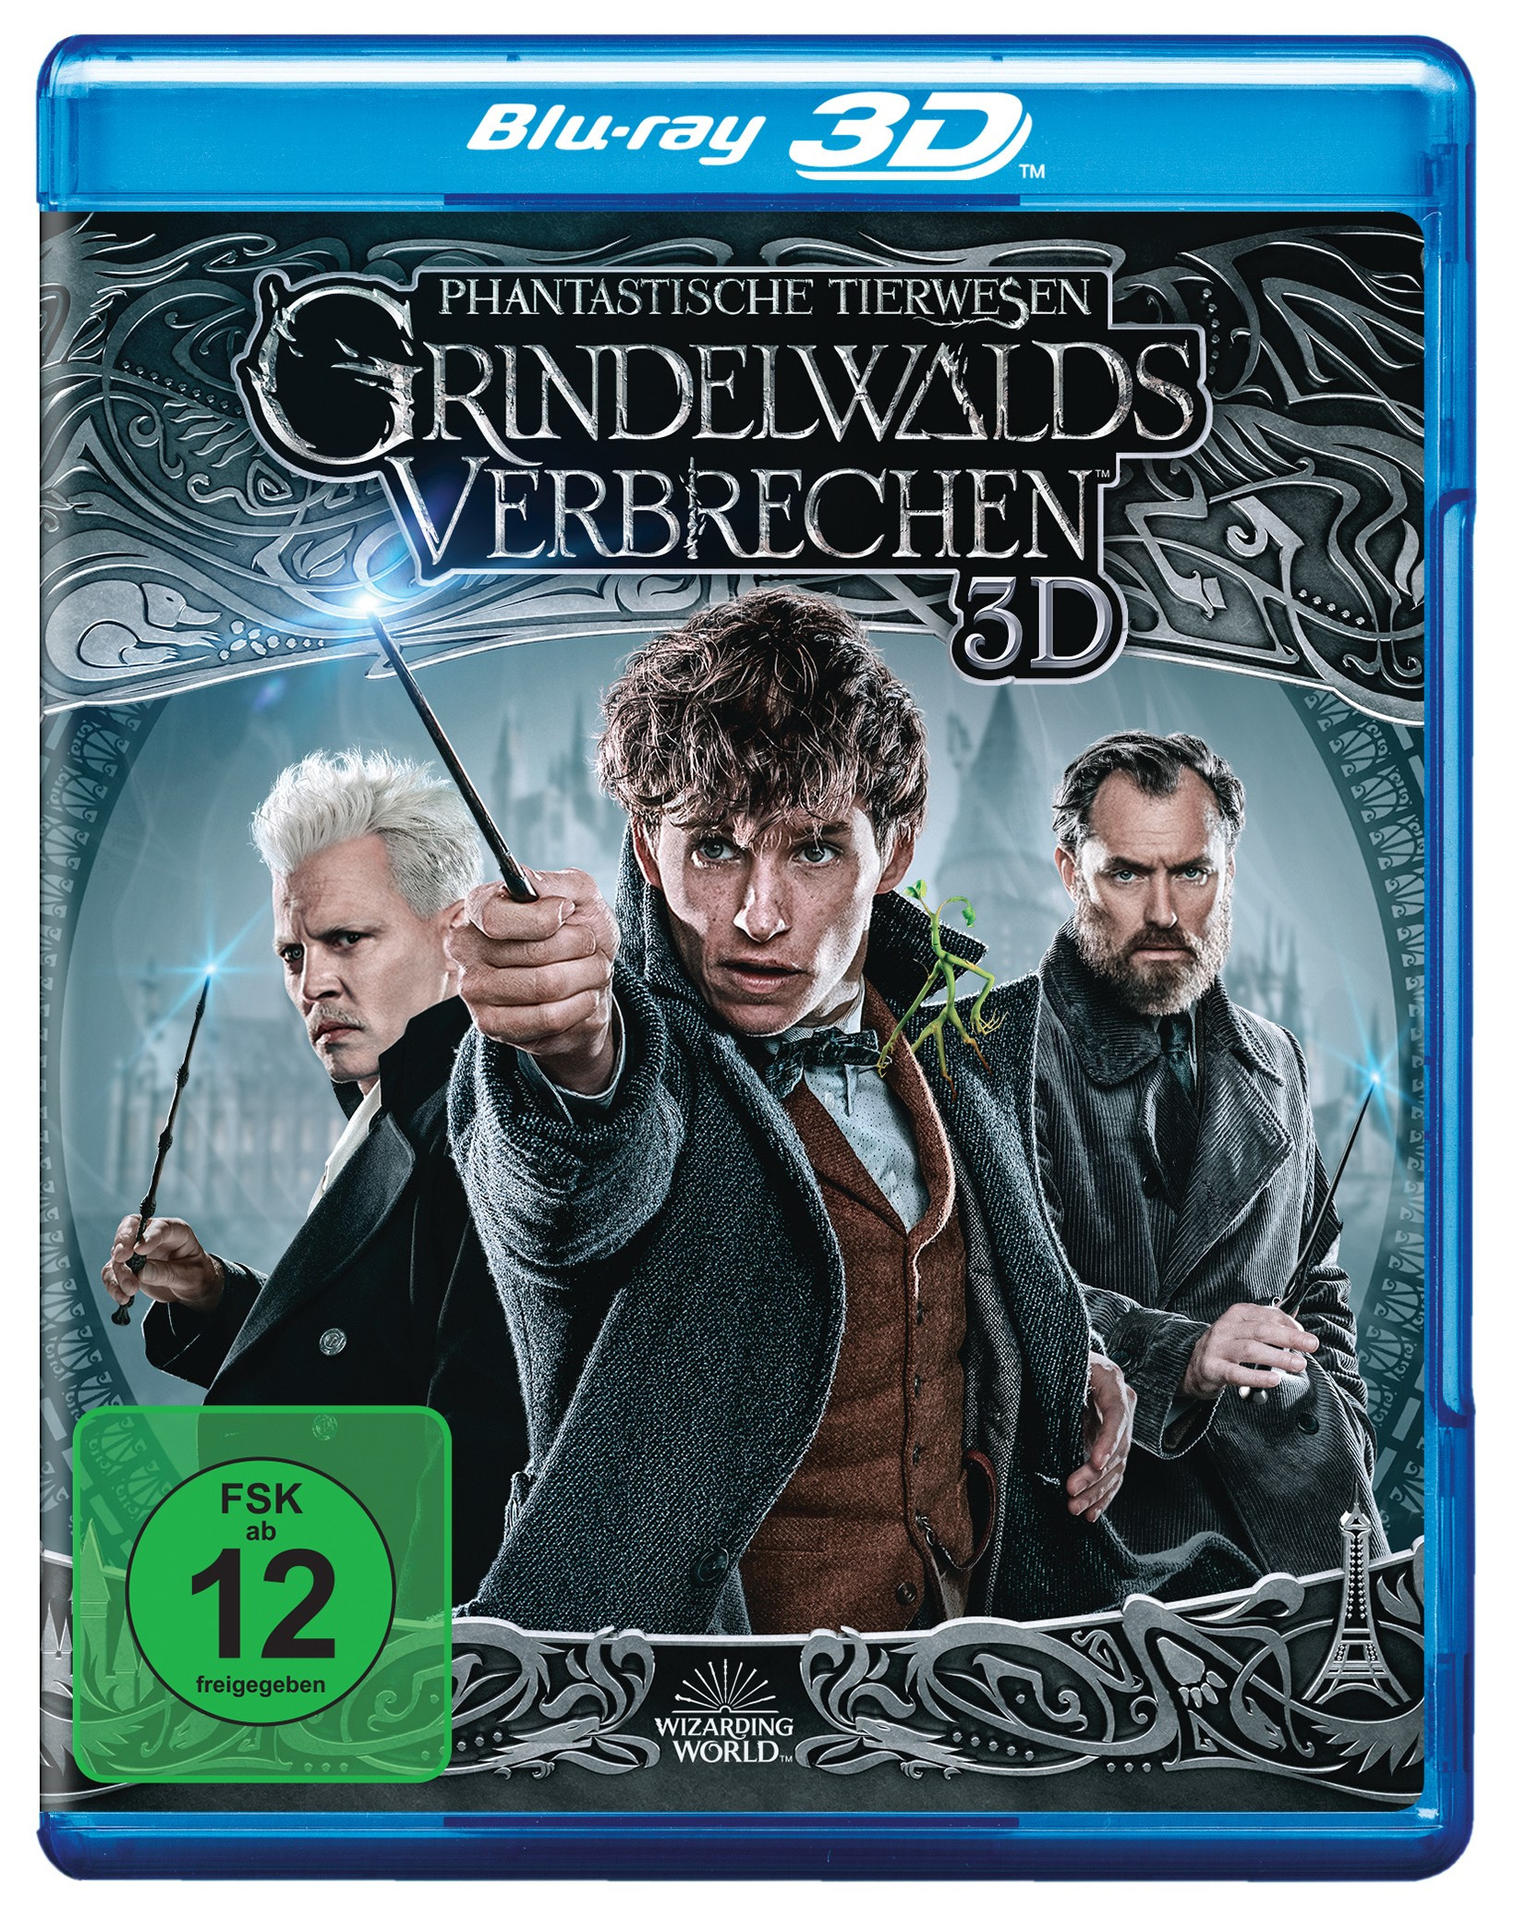 Tierwesen Phantastische Grindelwalds Cut Blu-ray + Verbrechen 3D Kinofassung Extended